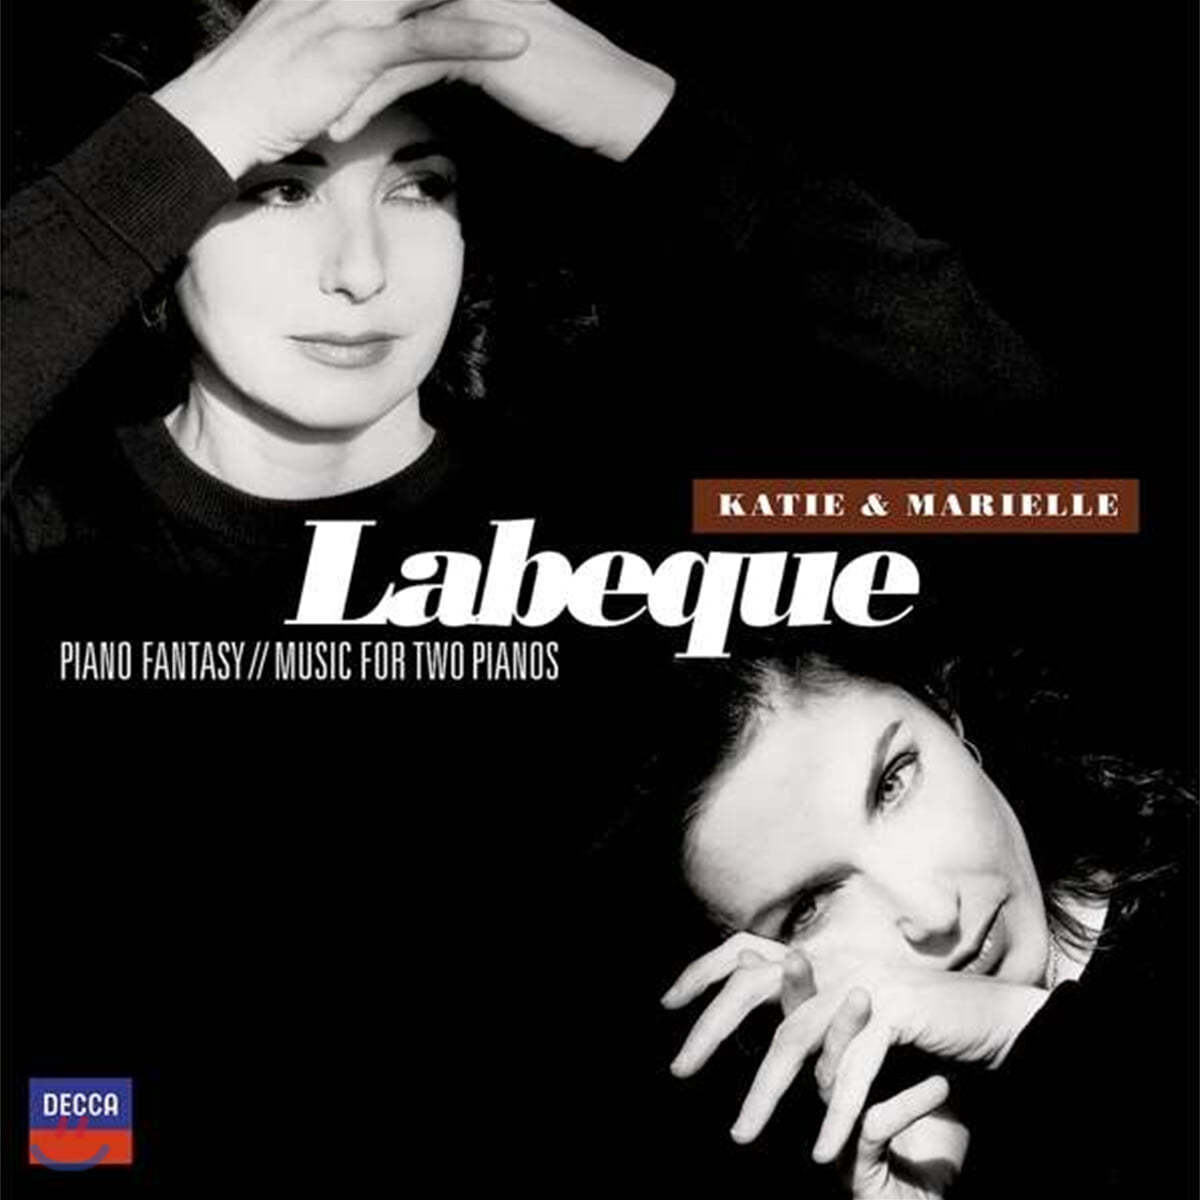 Katia & Marielle Labeque (카티아 & 마리엘레 라베끄) - Piano Fantasy , Music For Two Pianos 